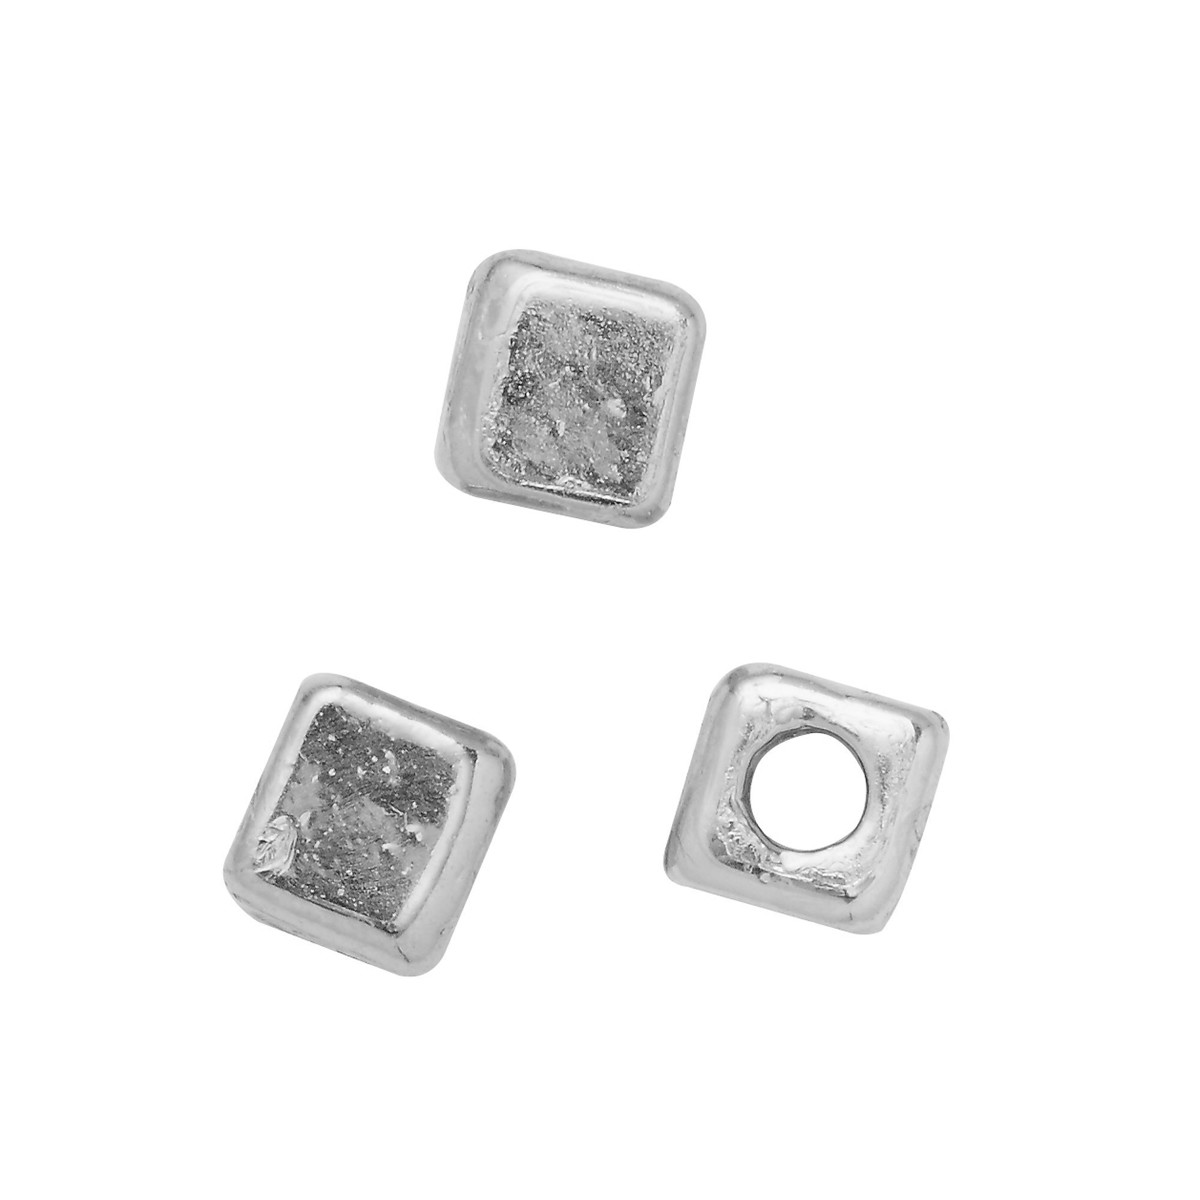 Spacers - 100 stuks - zilverkleurige kubus